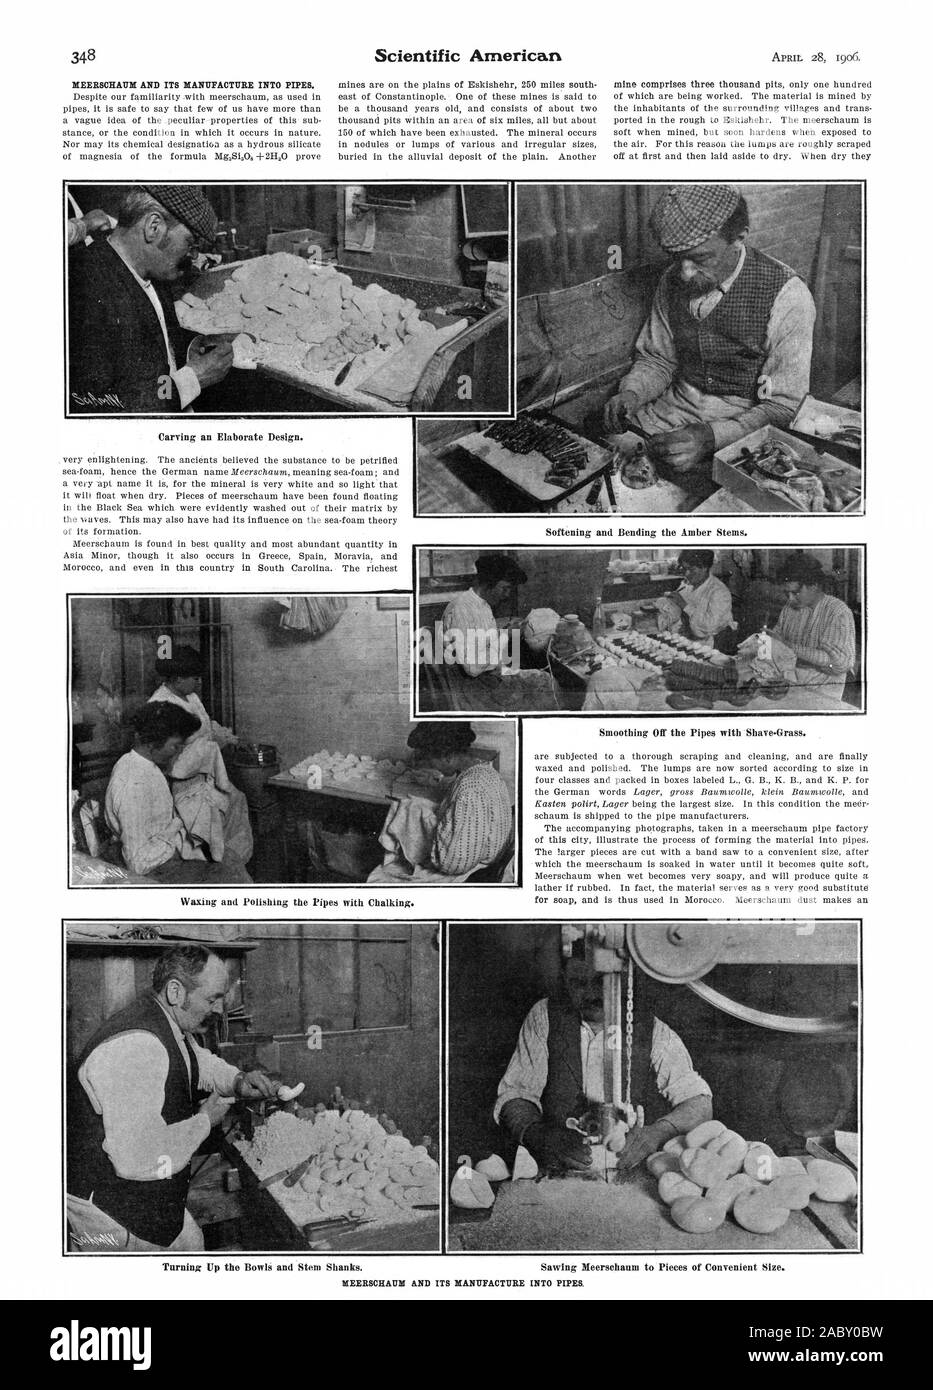 Il carving un design elaborato. Smussatura Disattiva le tubazioni con Shave-Grass., Scientific American, 1906-04-28 Foto Stock